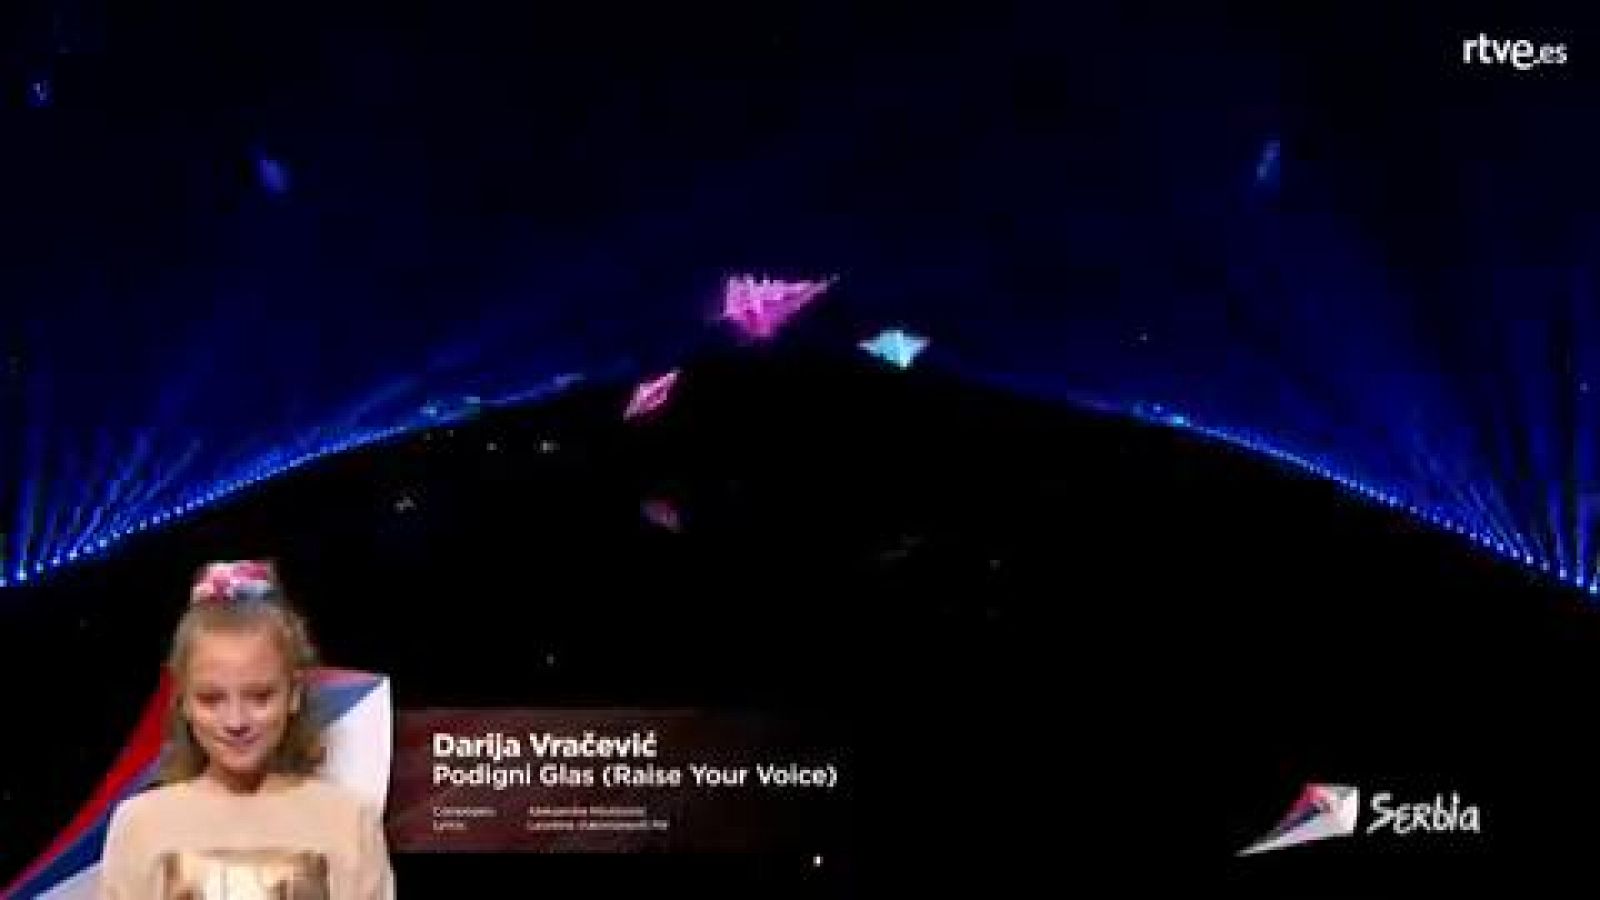 Eurovisión Junior 2019 - Darija Vracevic de Serbia canta "Podigni Glas"